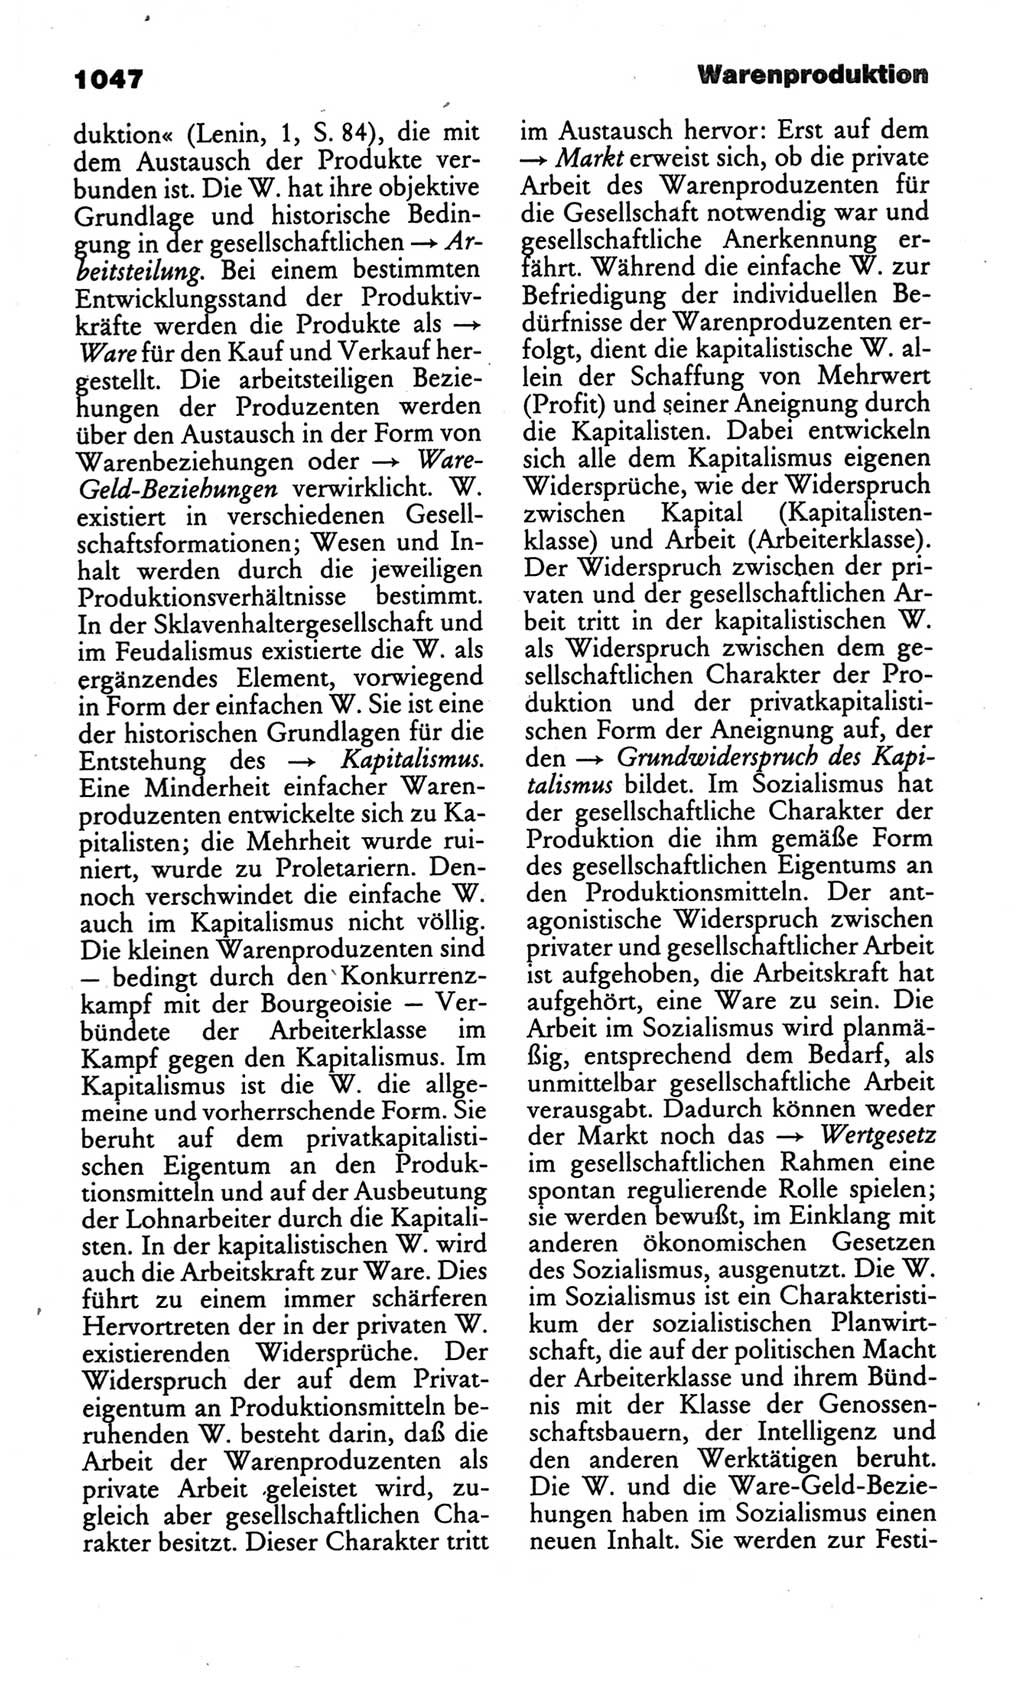 Kleines politisches Wörterbuch [Deutsche Demokratische Republik (DDR)] 1986, Seite 1047 (Kl. pol. Wb. DDR 1986, S. 1047)